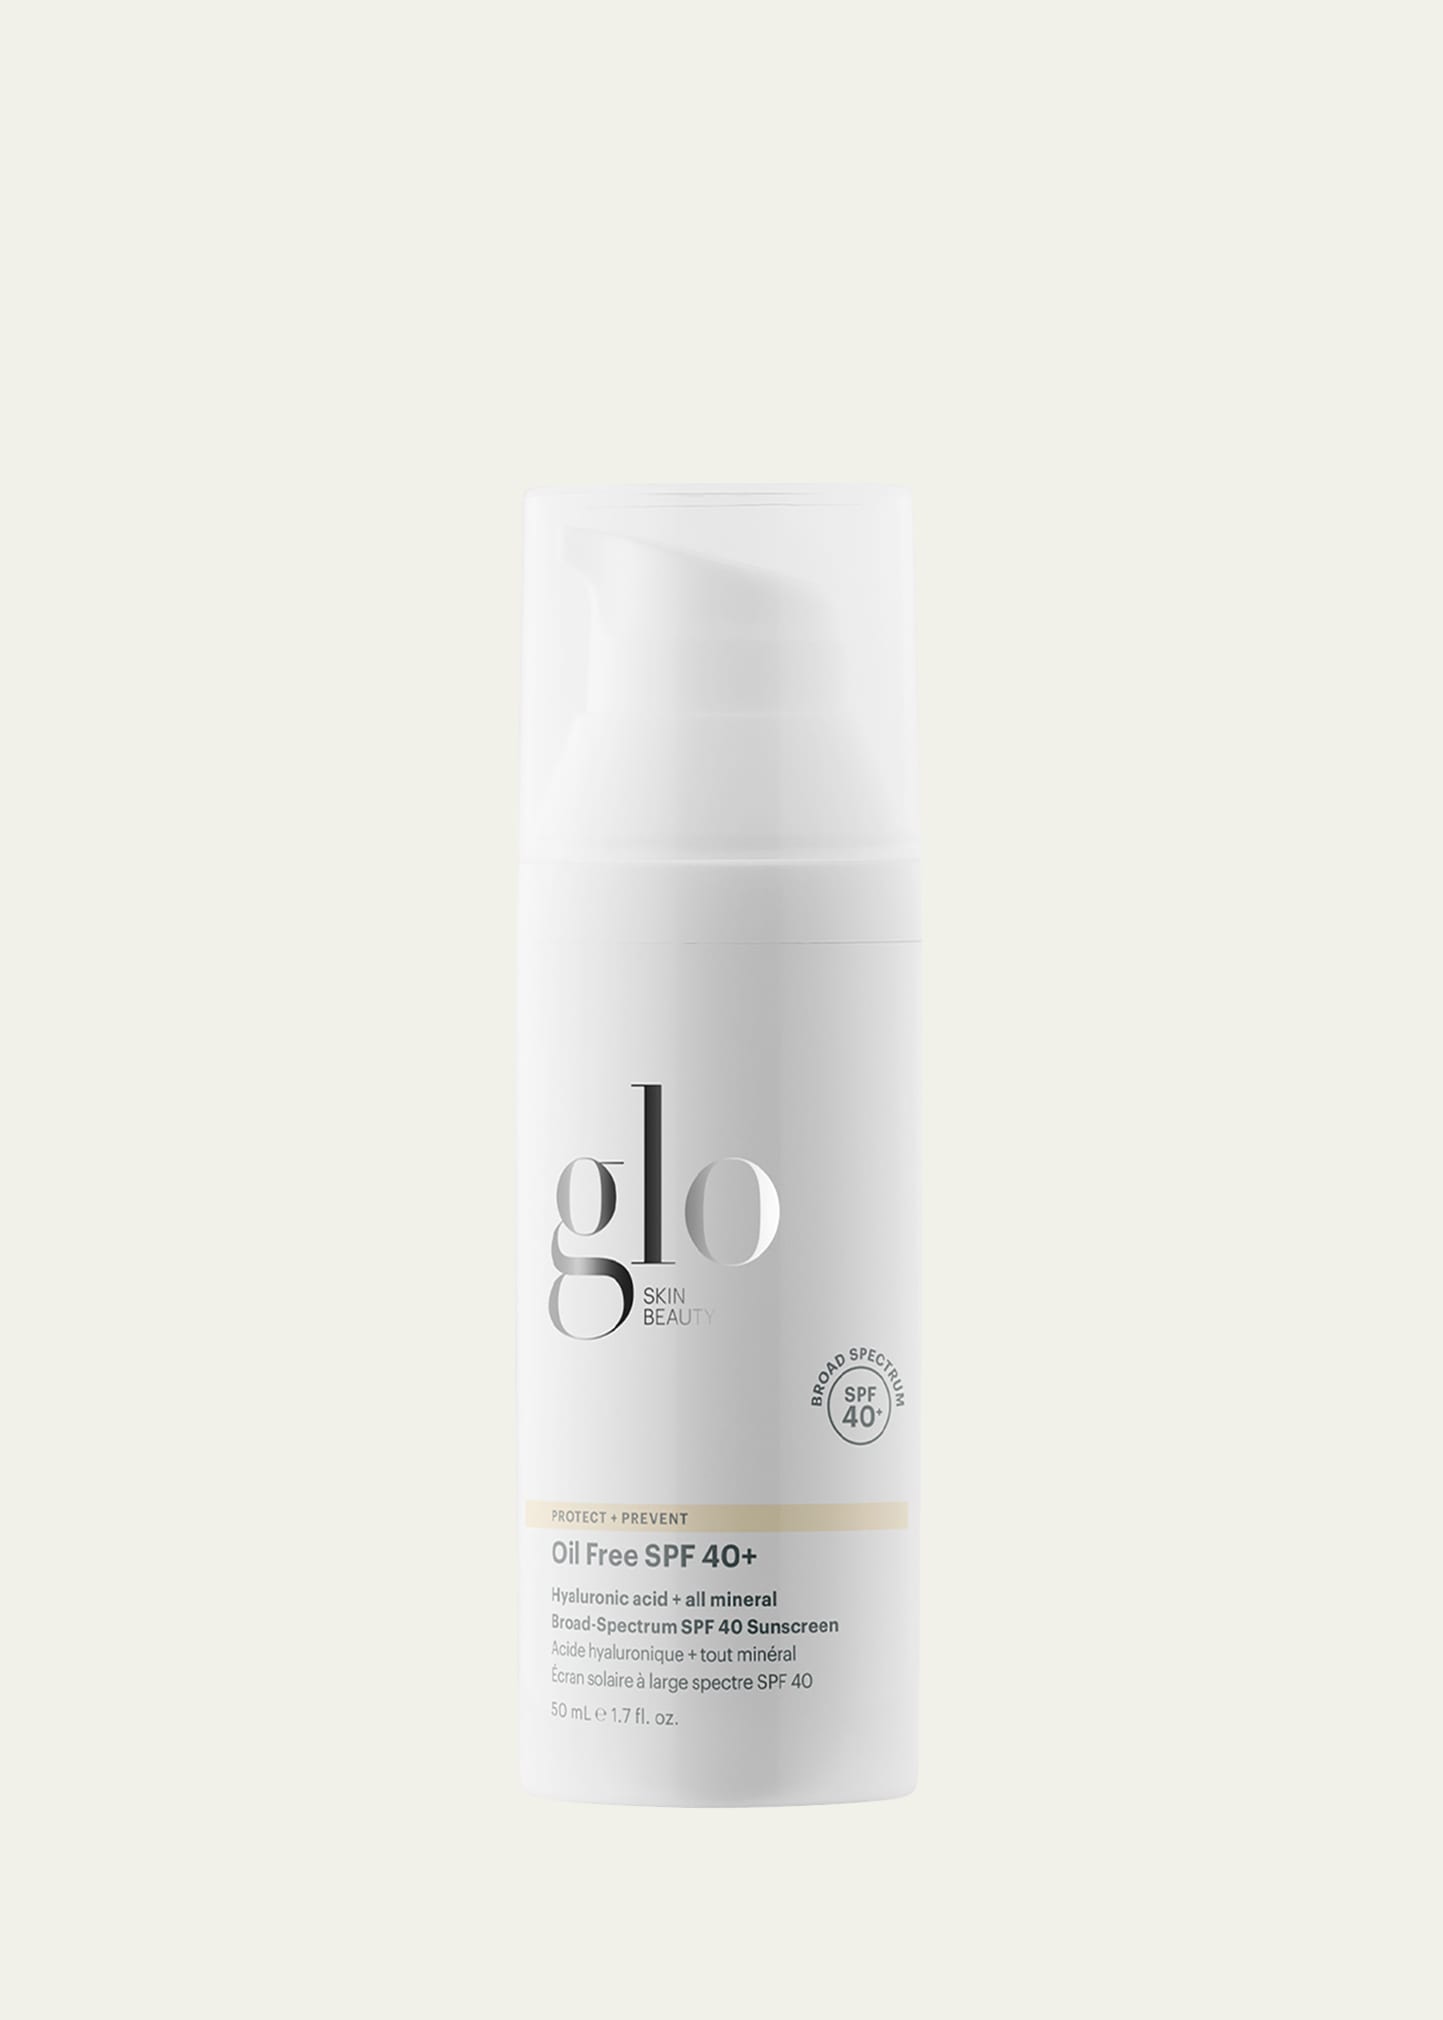 Glo Skin Beauty Oil-Free SPF 40+ Broad Spectrum Sunscreen, 1.7 oz.